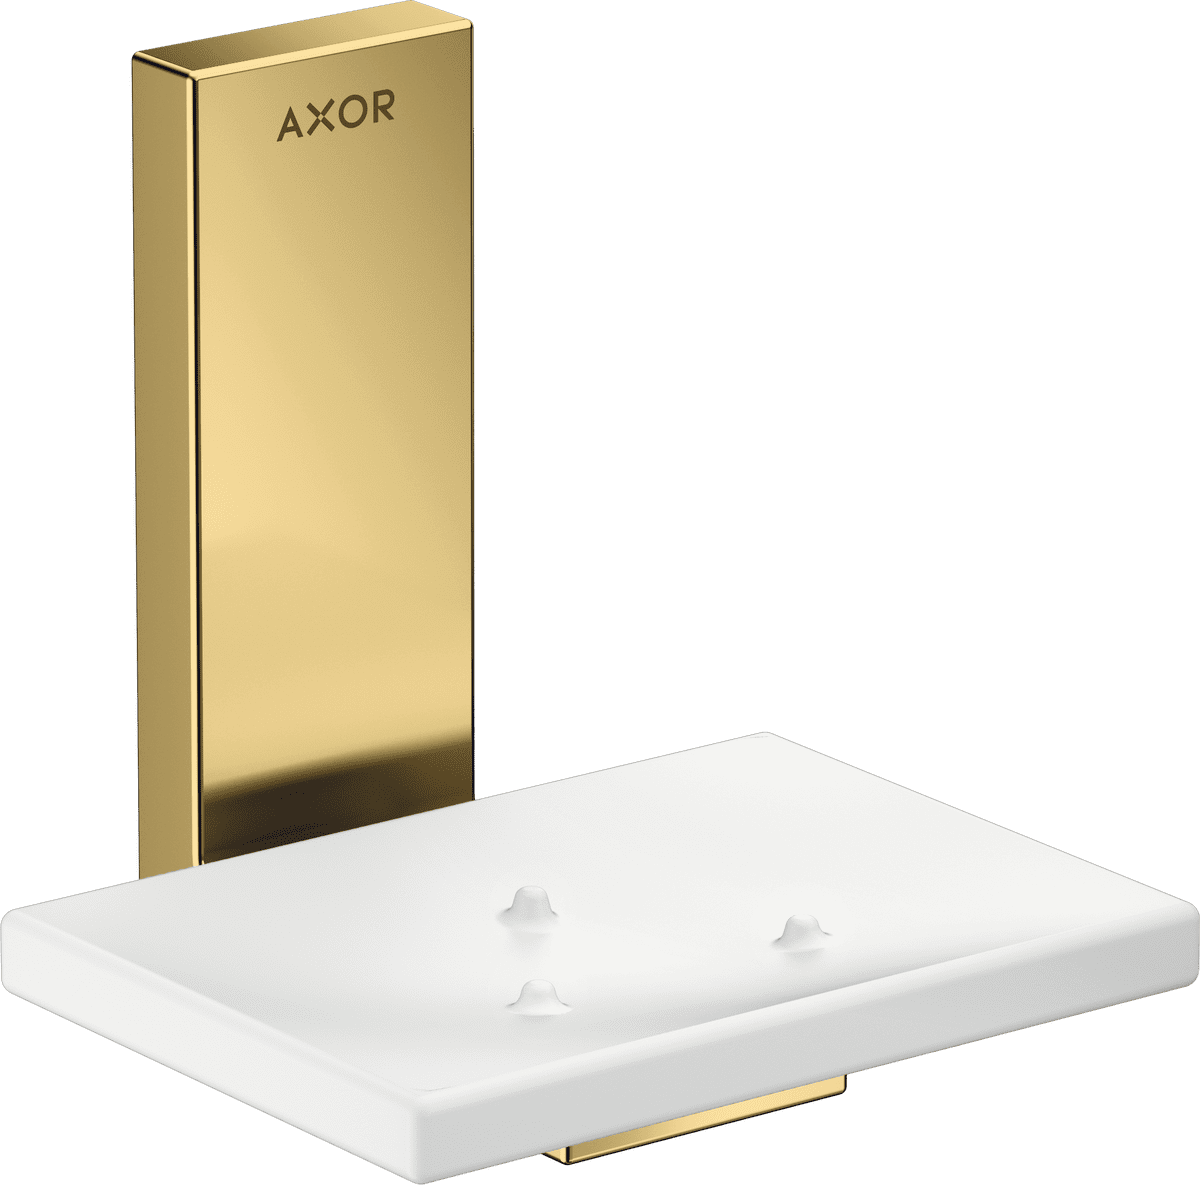 Obrázek HANSGROHE AXOR Universal Rectangular miska na mýdlo #42605990 - leštěný vzhled zlata